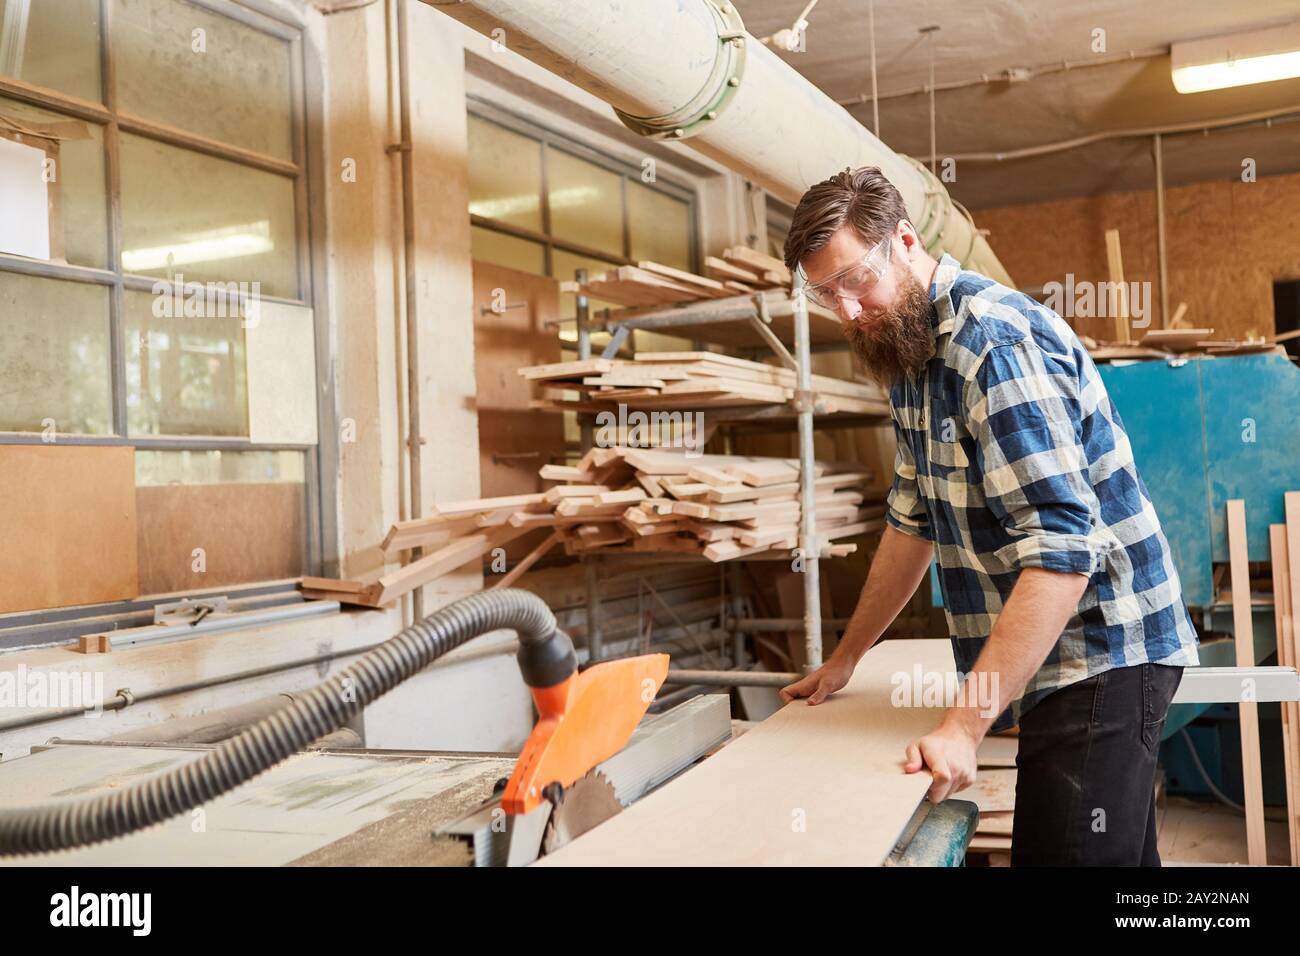 Carpenter trabaja con la sierra circular en el taller de carpintería Foto de stock